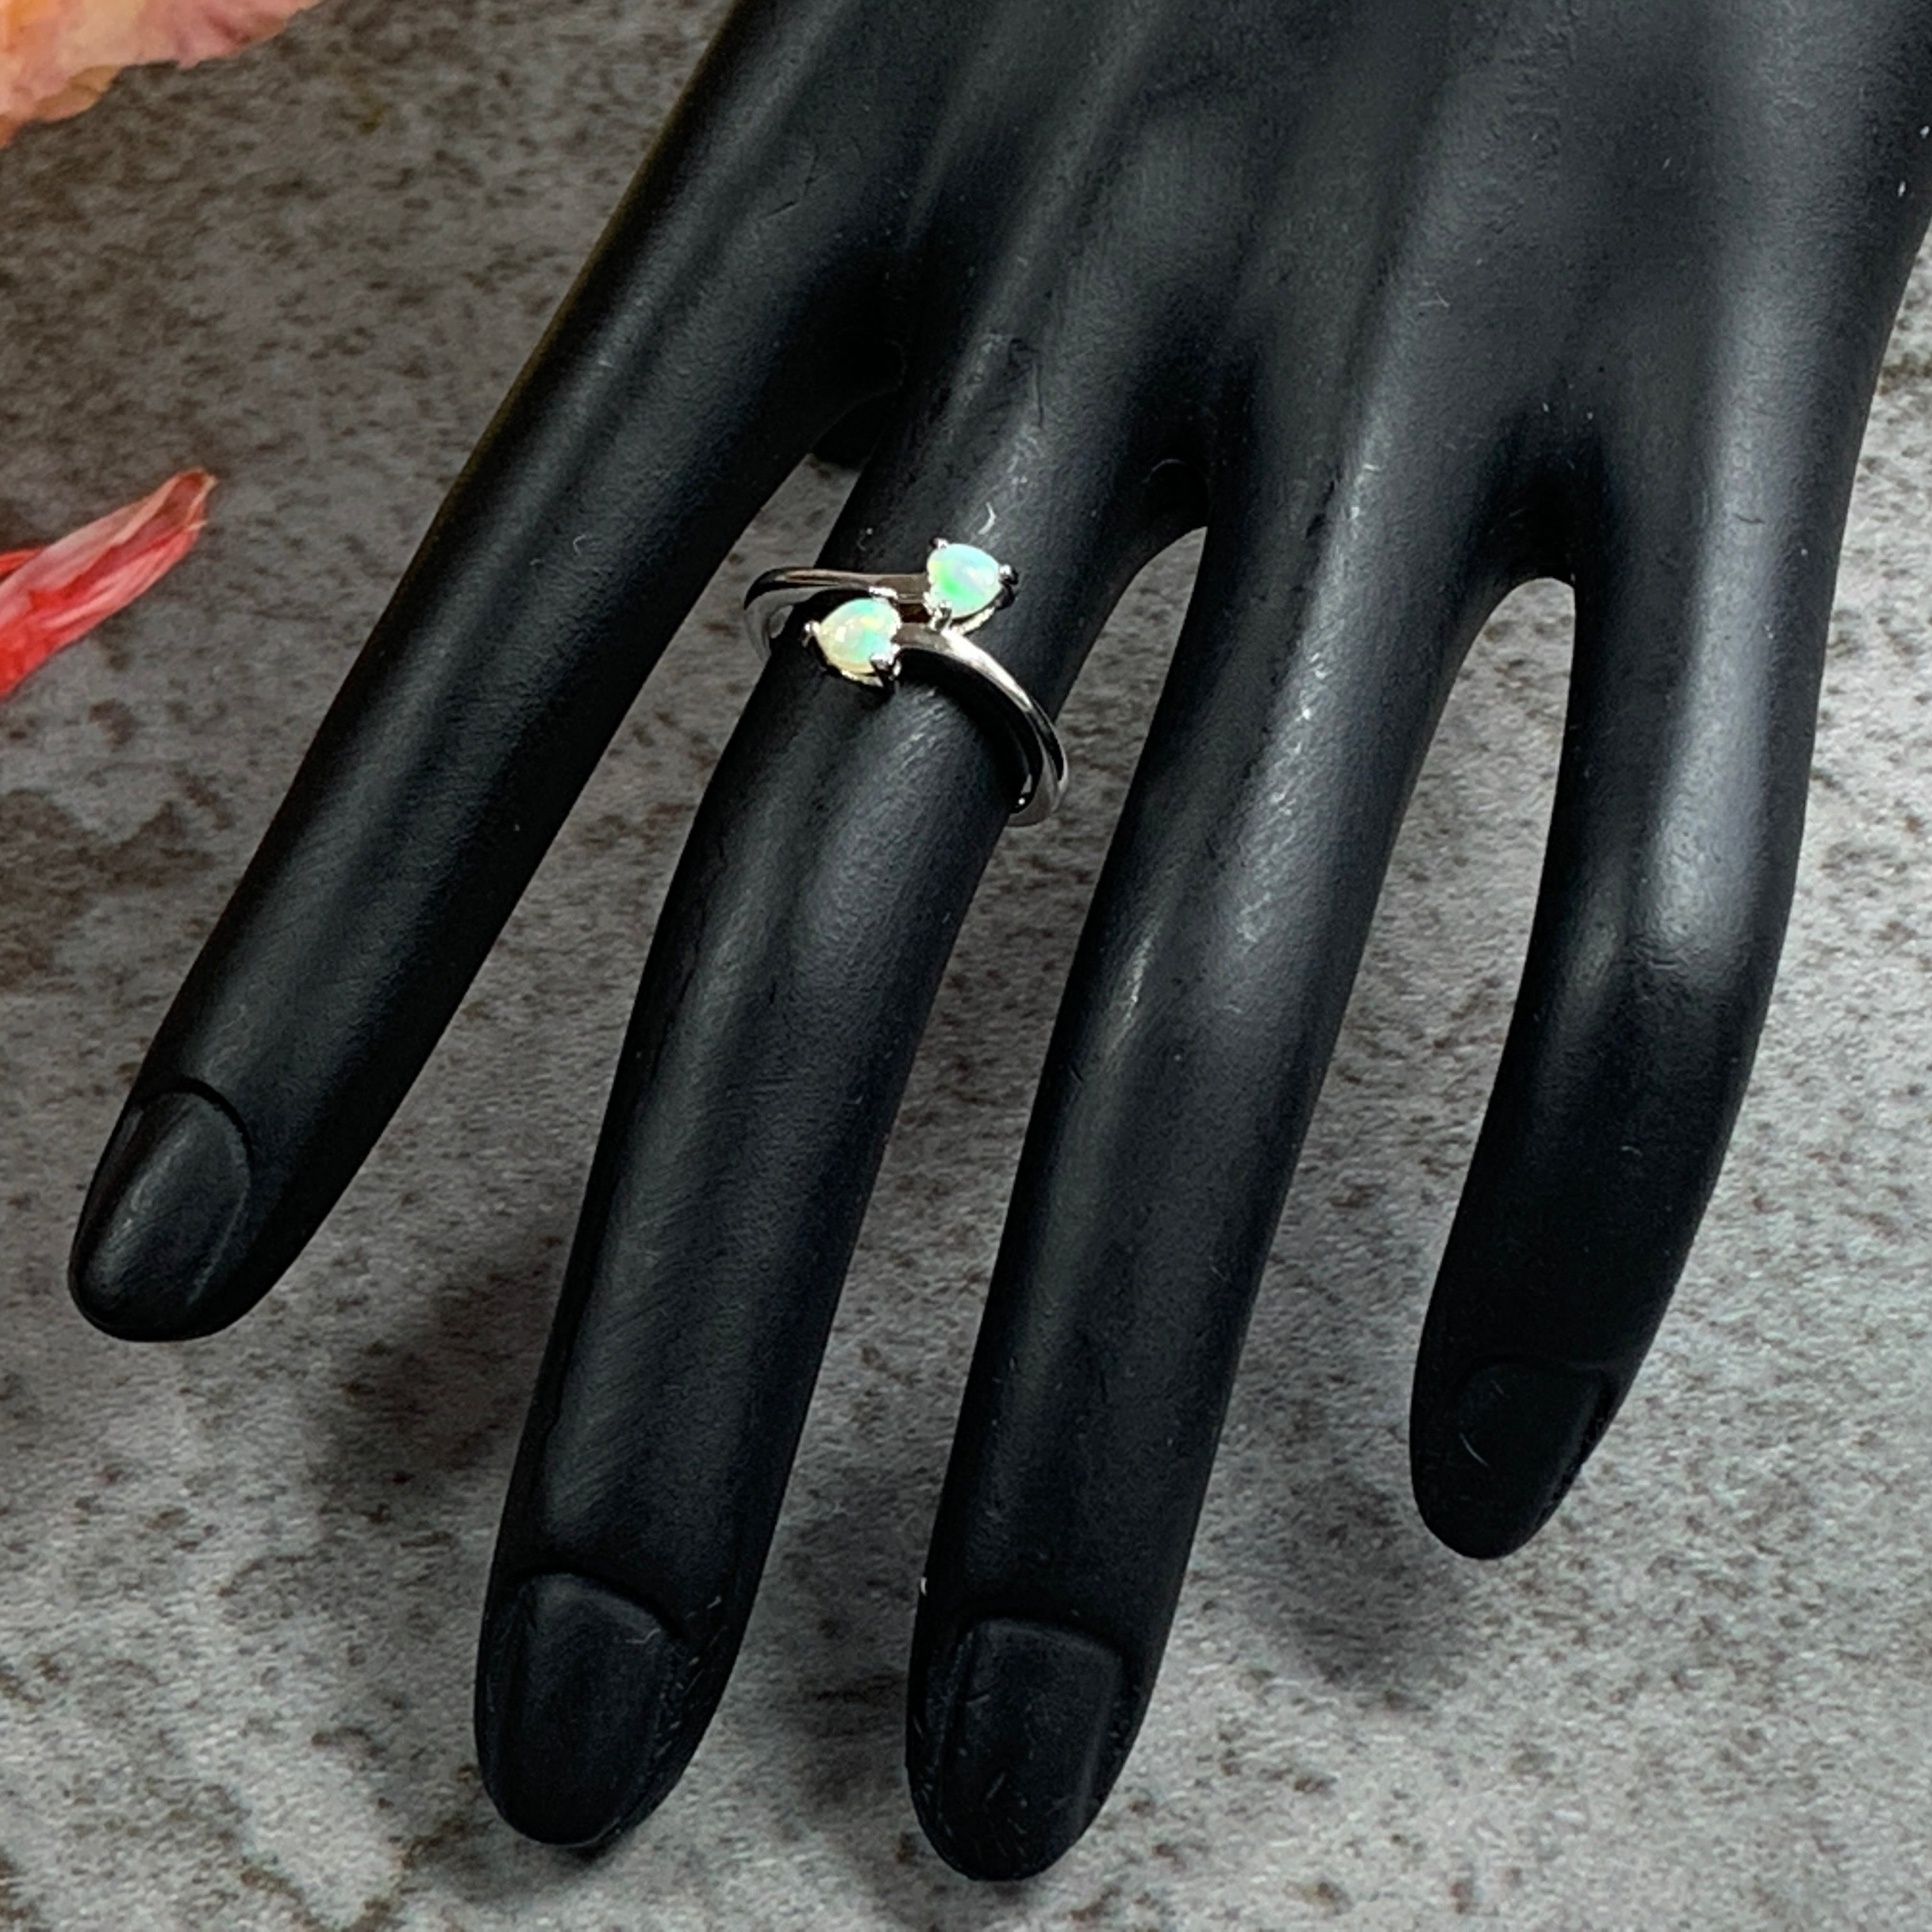 Sterling Silver 4mm Hearts Opal ring - Masterpiece Jewellery Opal & Gems Sydney Australia | Online Shop